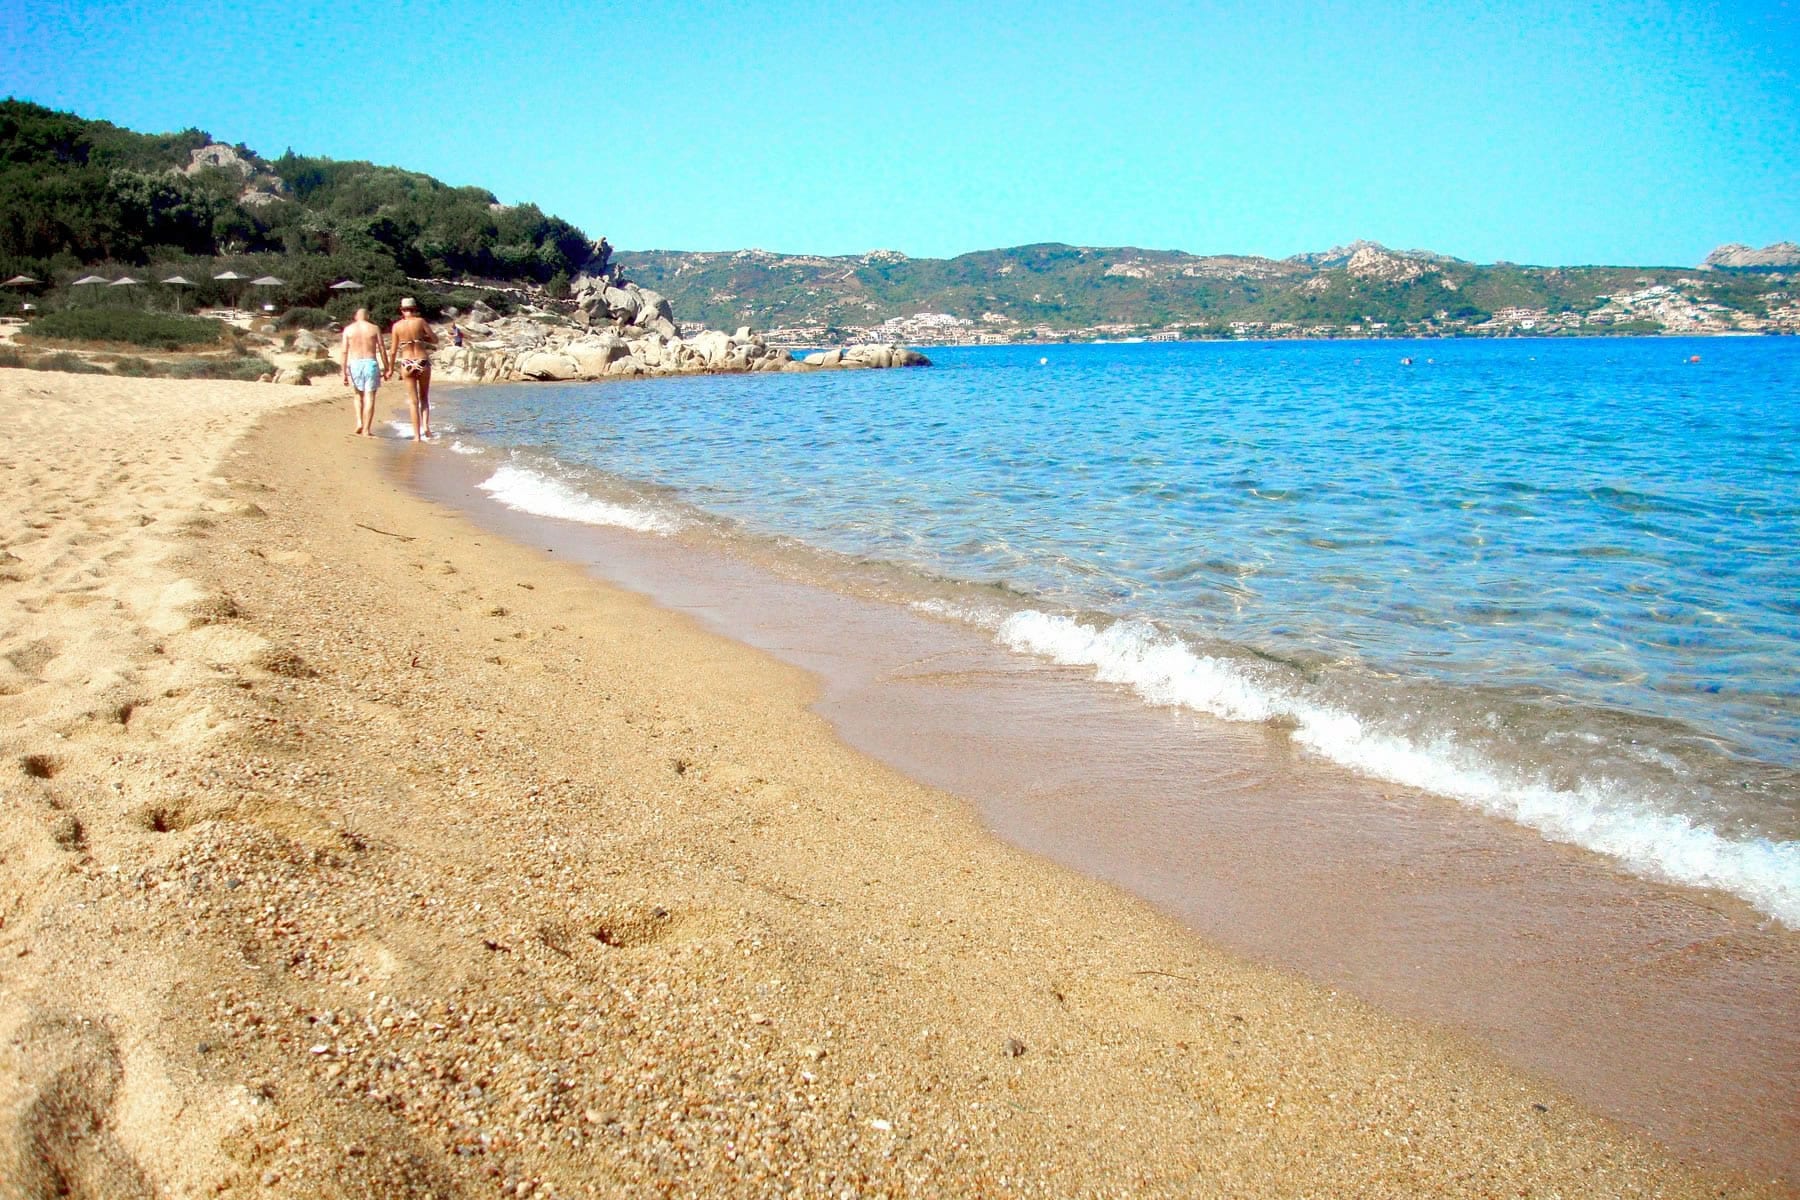 Arzachena, l'acqua del mare di Baia Sardinia è giallastra